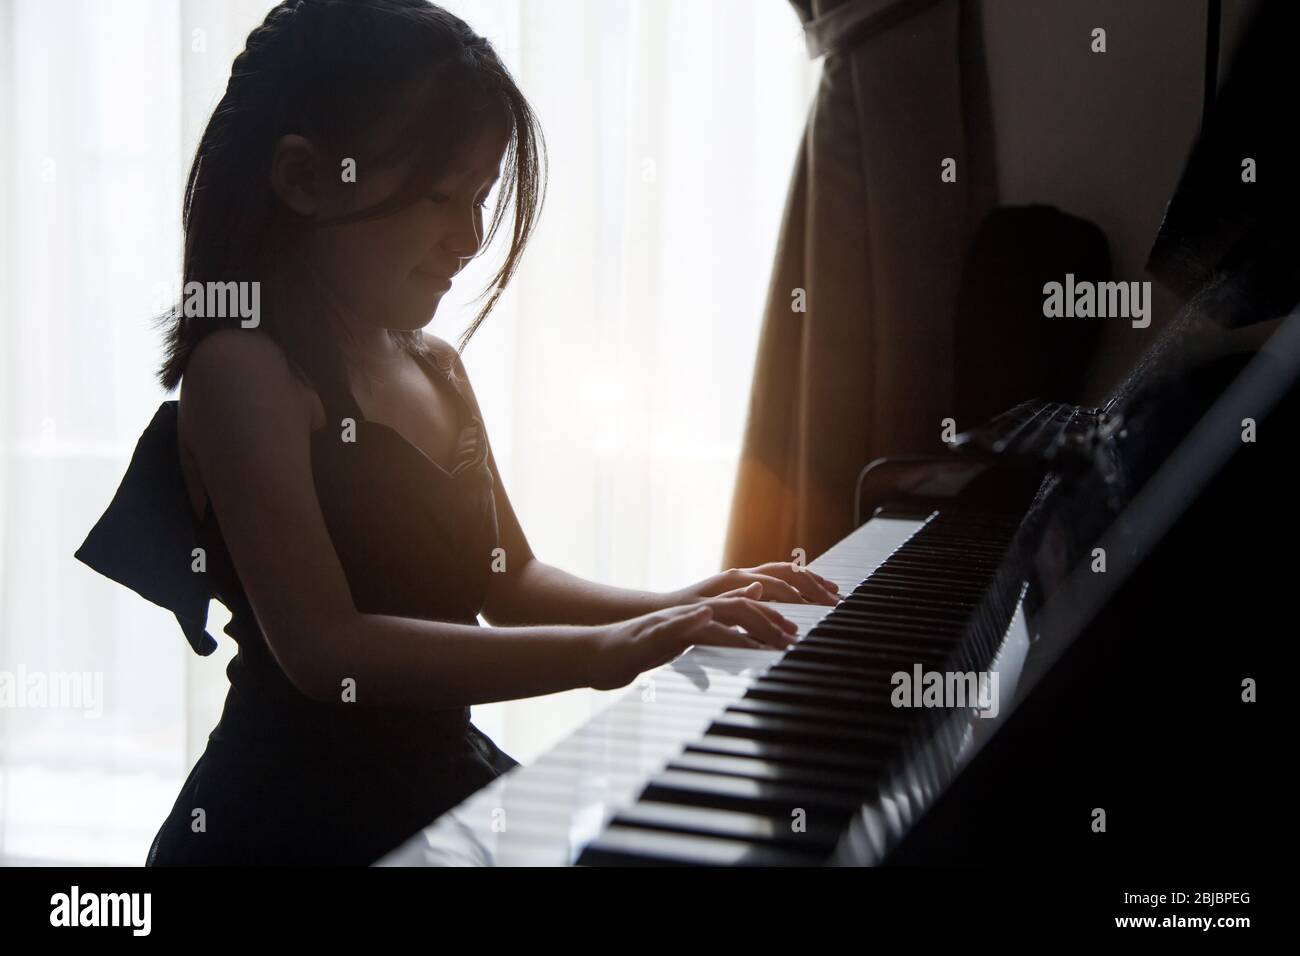 las niñas asiáticas practican el piano para aumentar la habilidad musical para la ocupación futura. Foto de stock